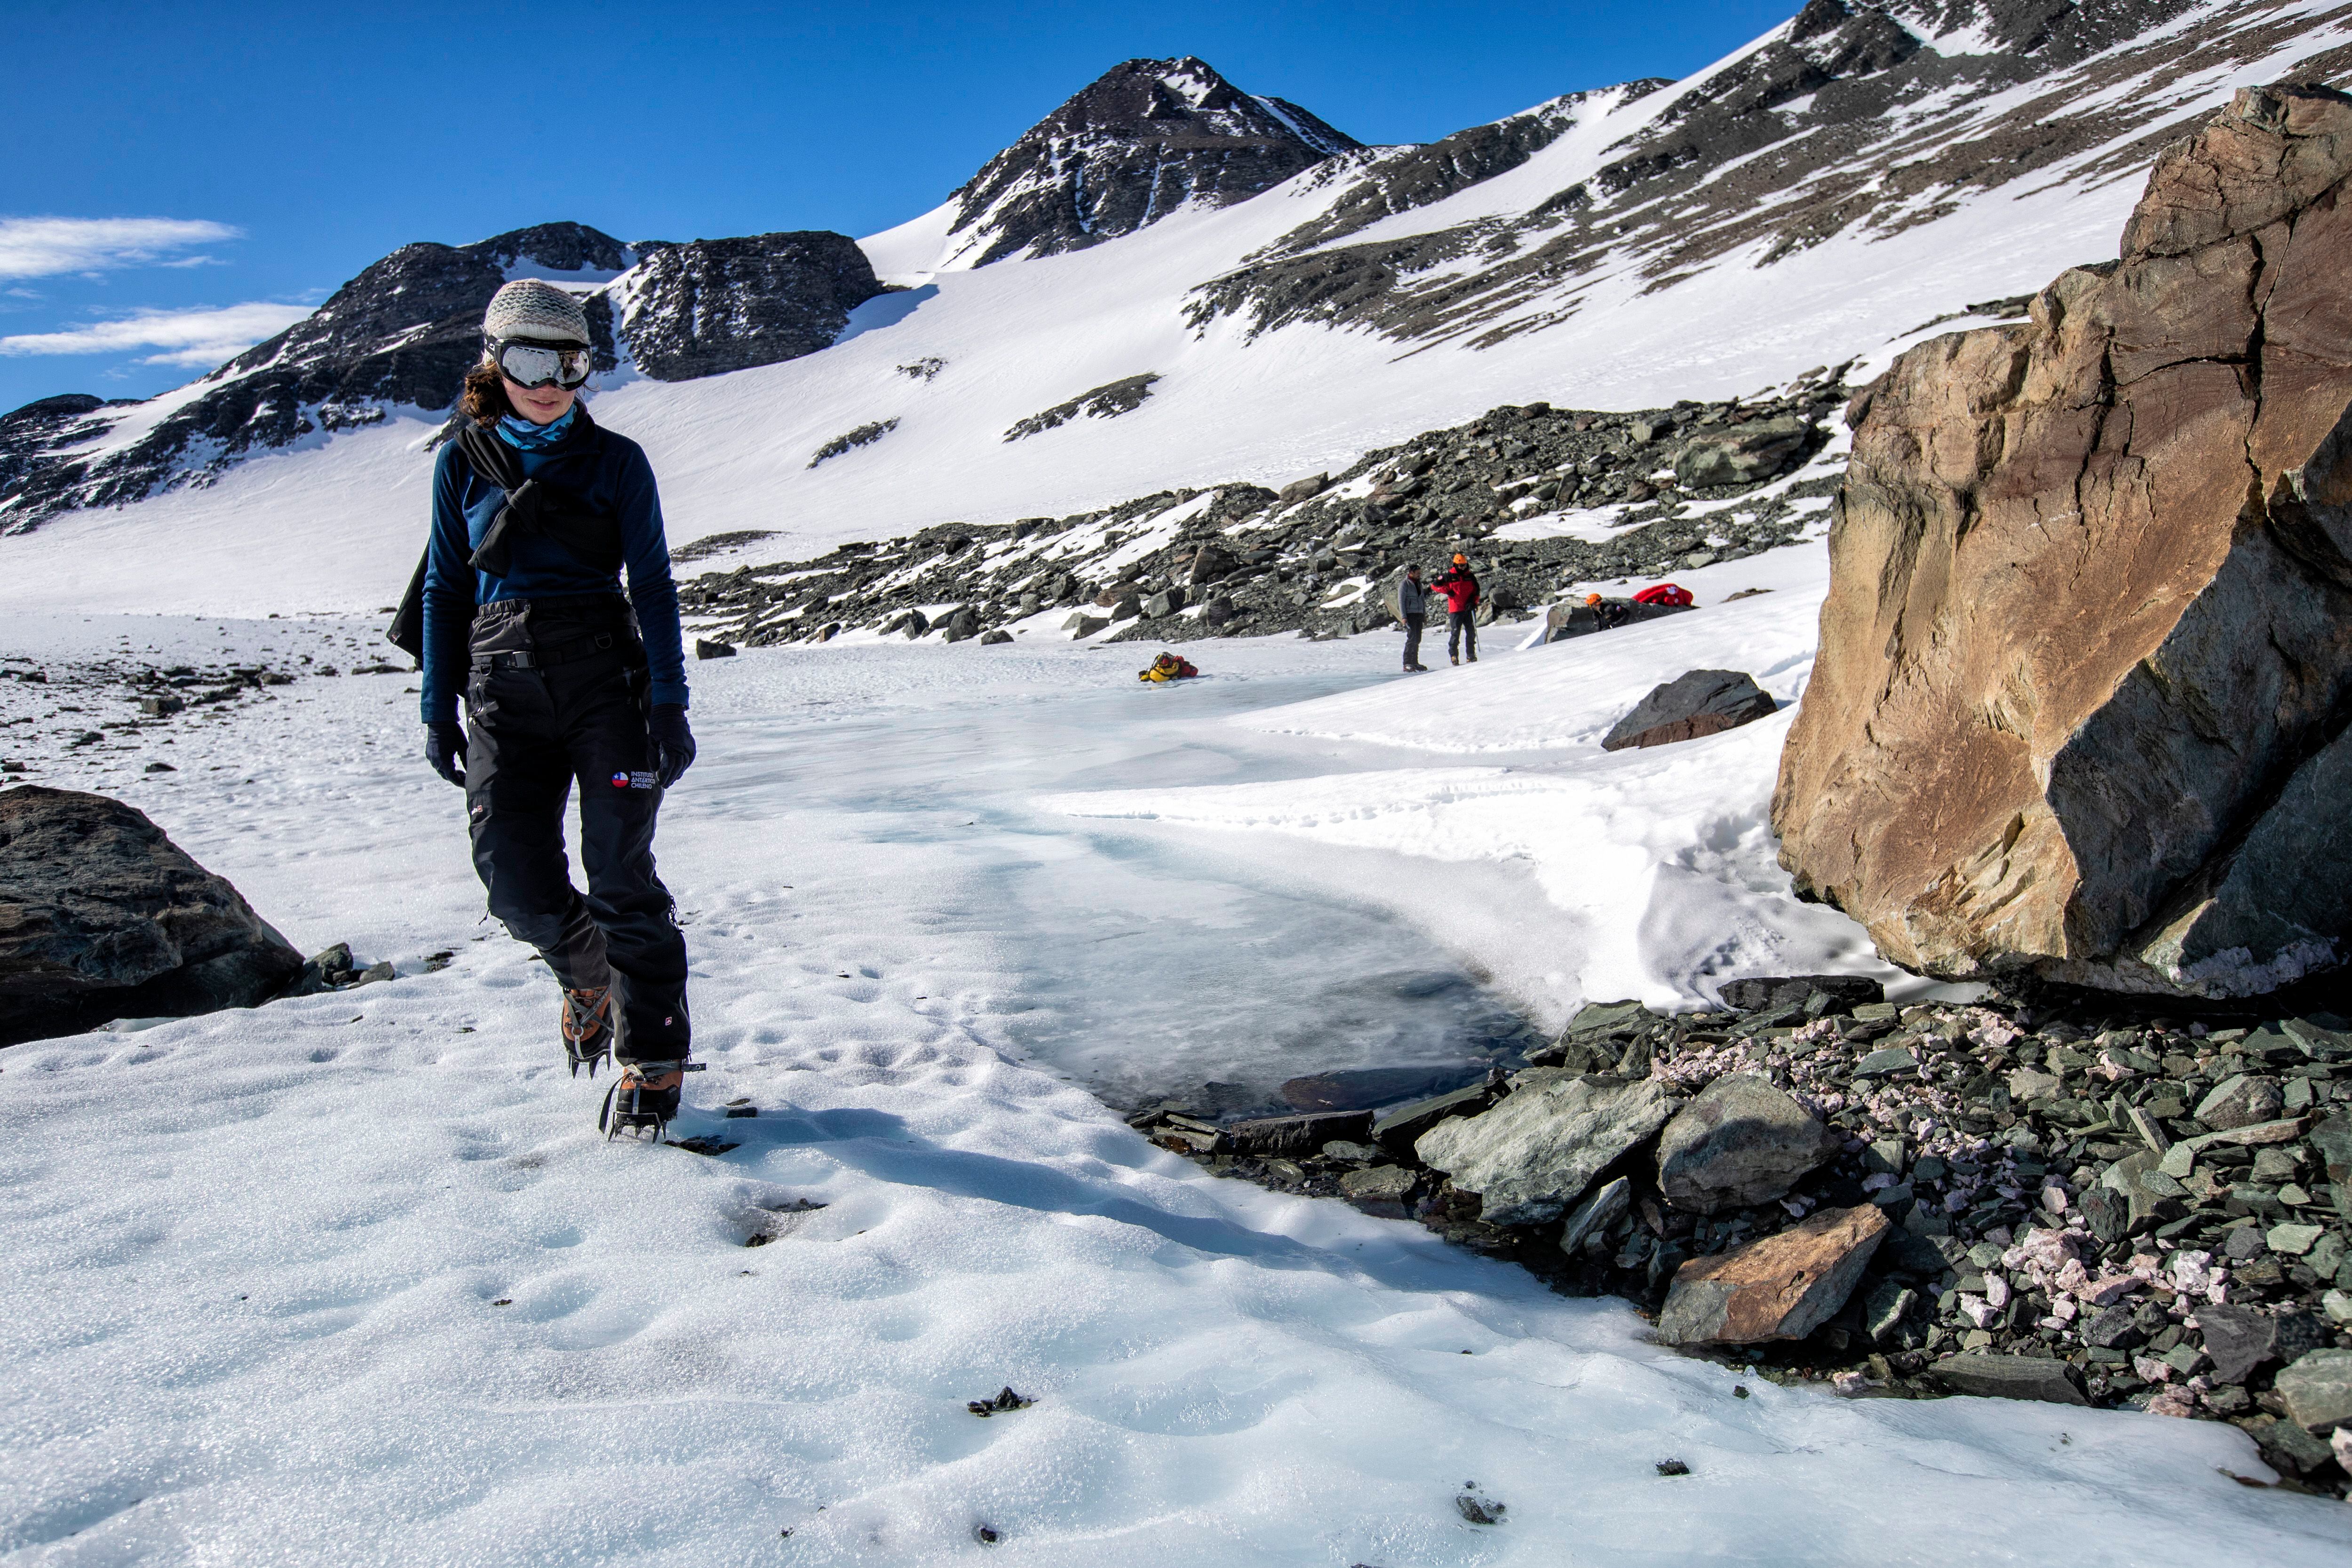 La glacióloga Veronica Tollenaar inspecciona una zona en la que se derrite el hielo por la acumulación de calor en las rocas.